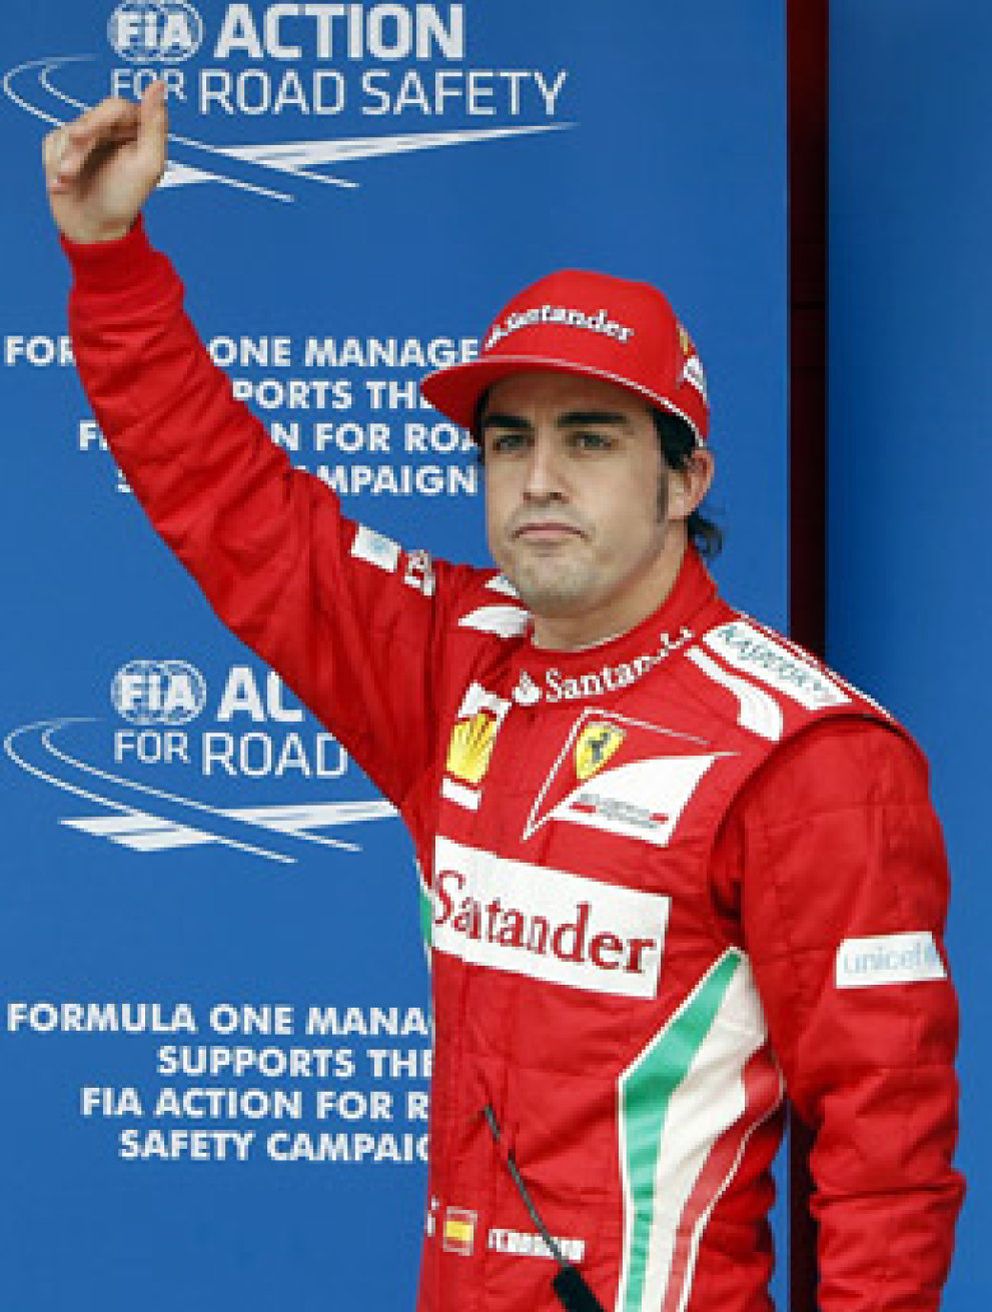 Foto: ¿Cómo plantea la carrera Alonso? "Agresivo" primero y "sin locuras" después